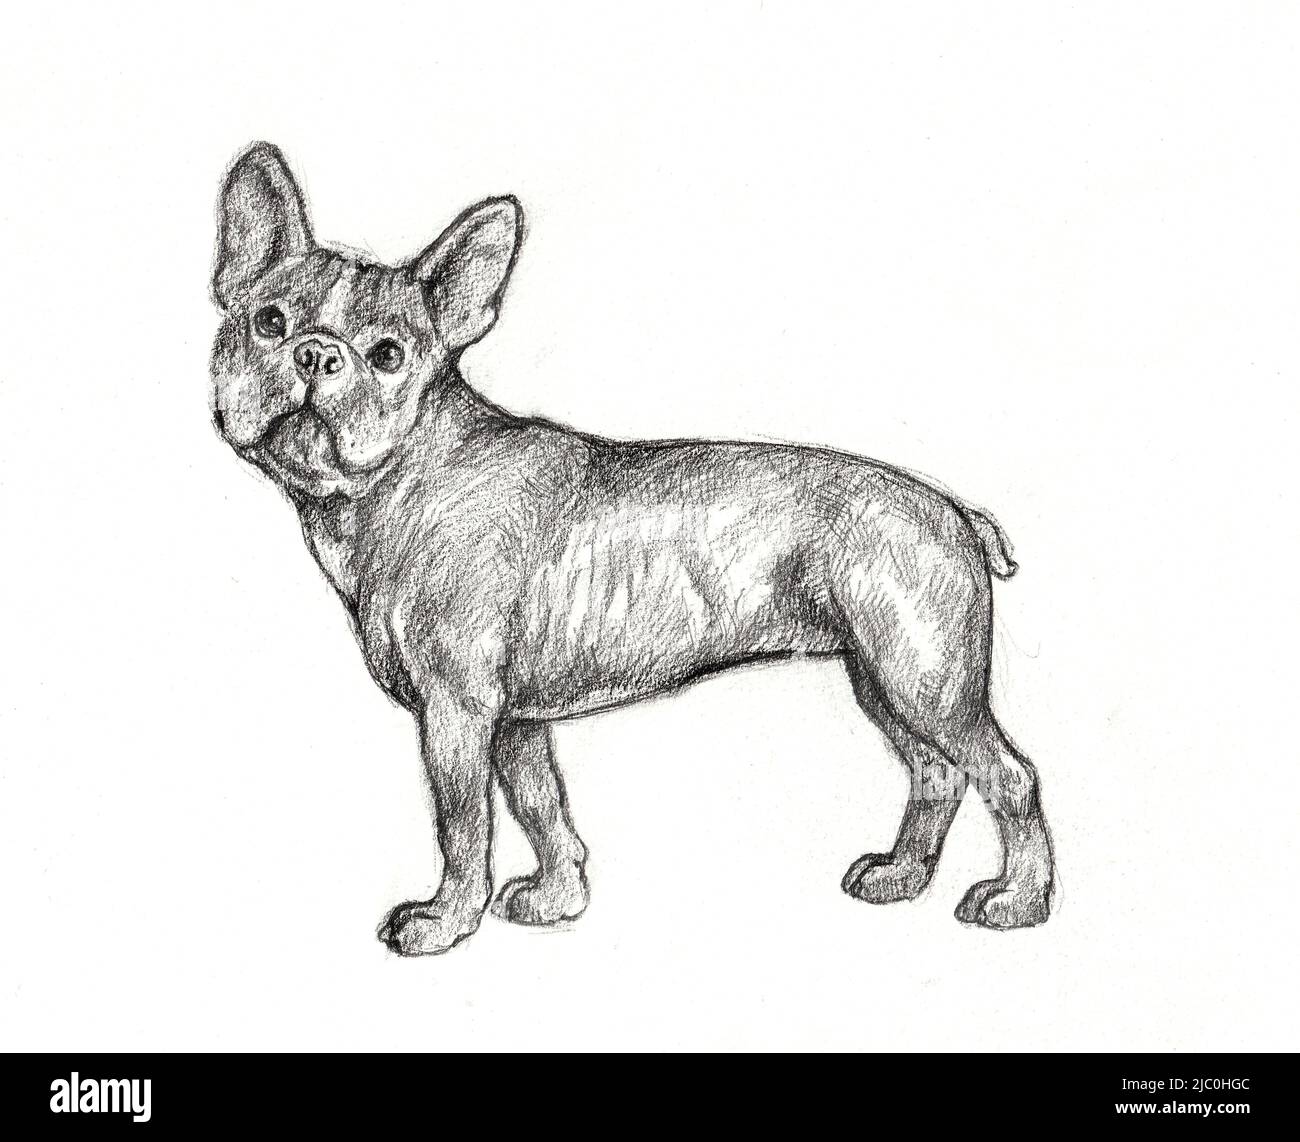 Joli dessin de chien de taureau français. Illustration crayon isolée faite à la main avec le chien. Banque D'Images